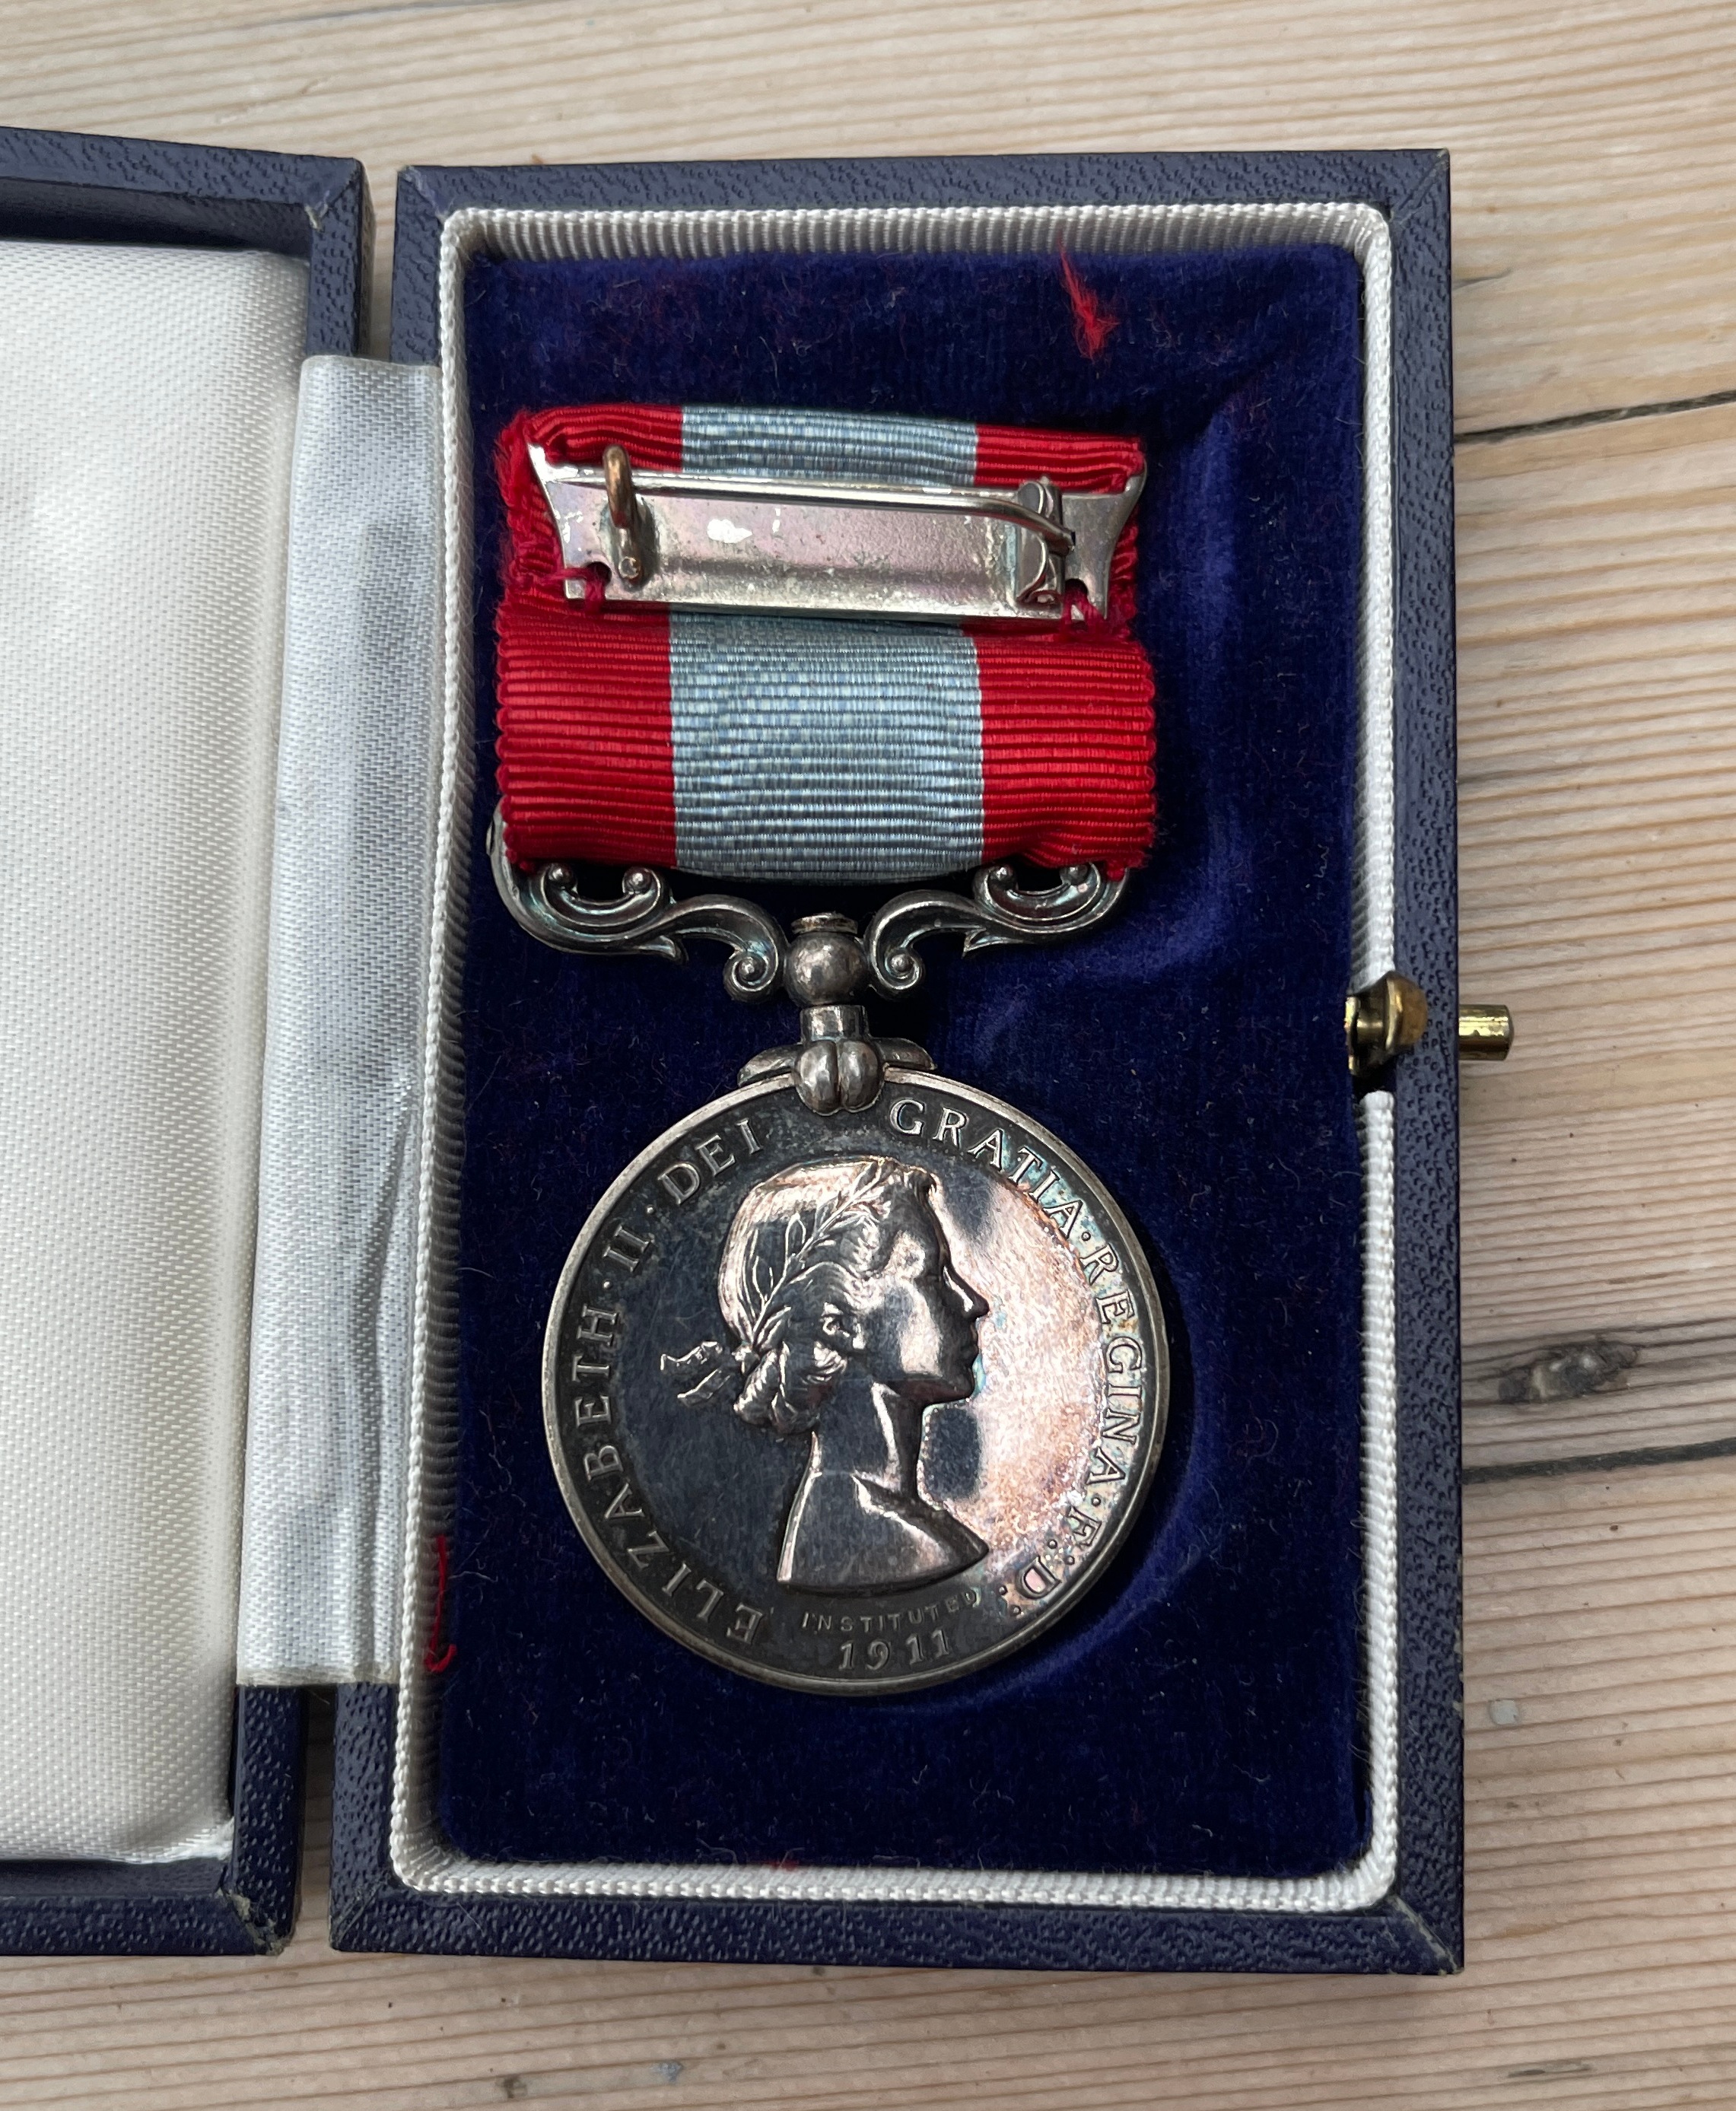 Boxed Life Saving Corps Long Service Medal to a: DAVID LOGAN. - Image 3 of 4